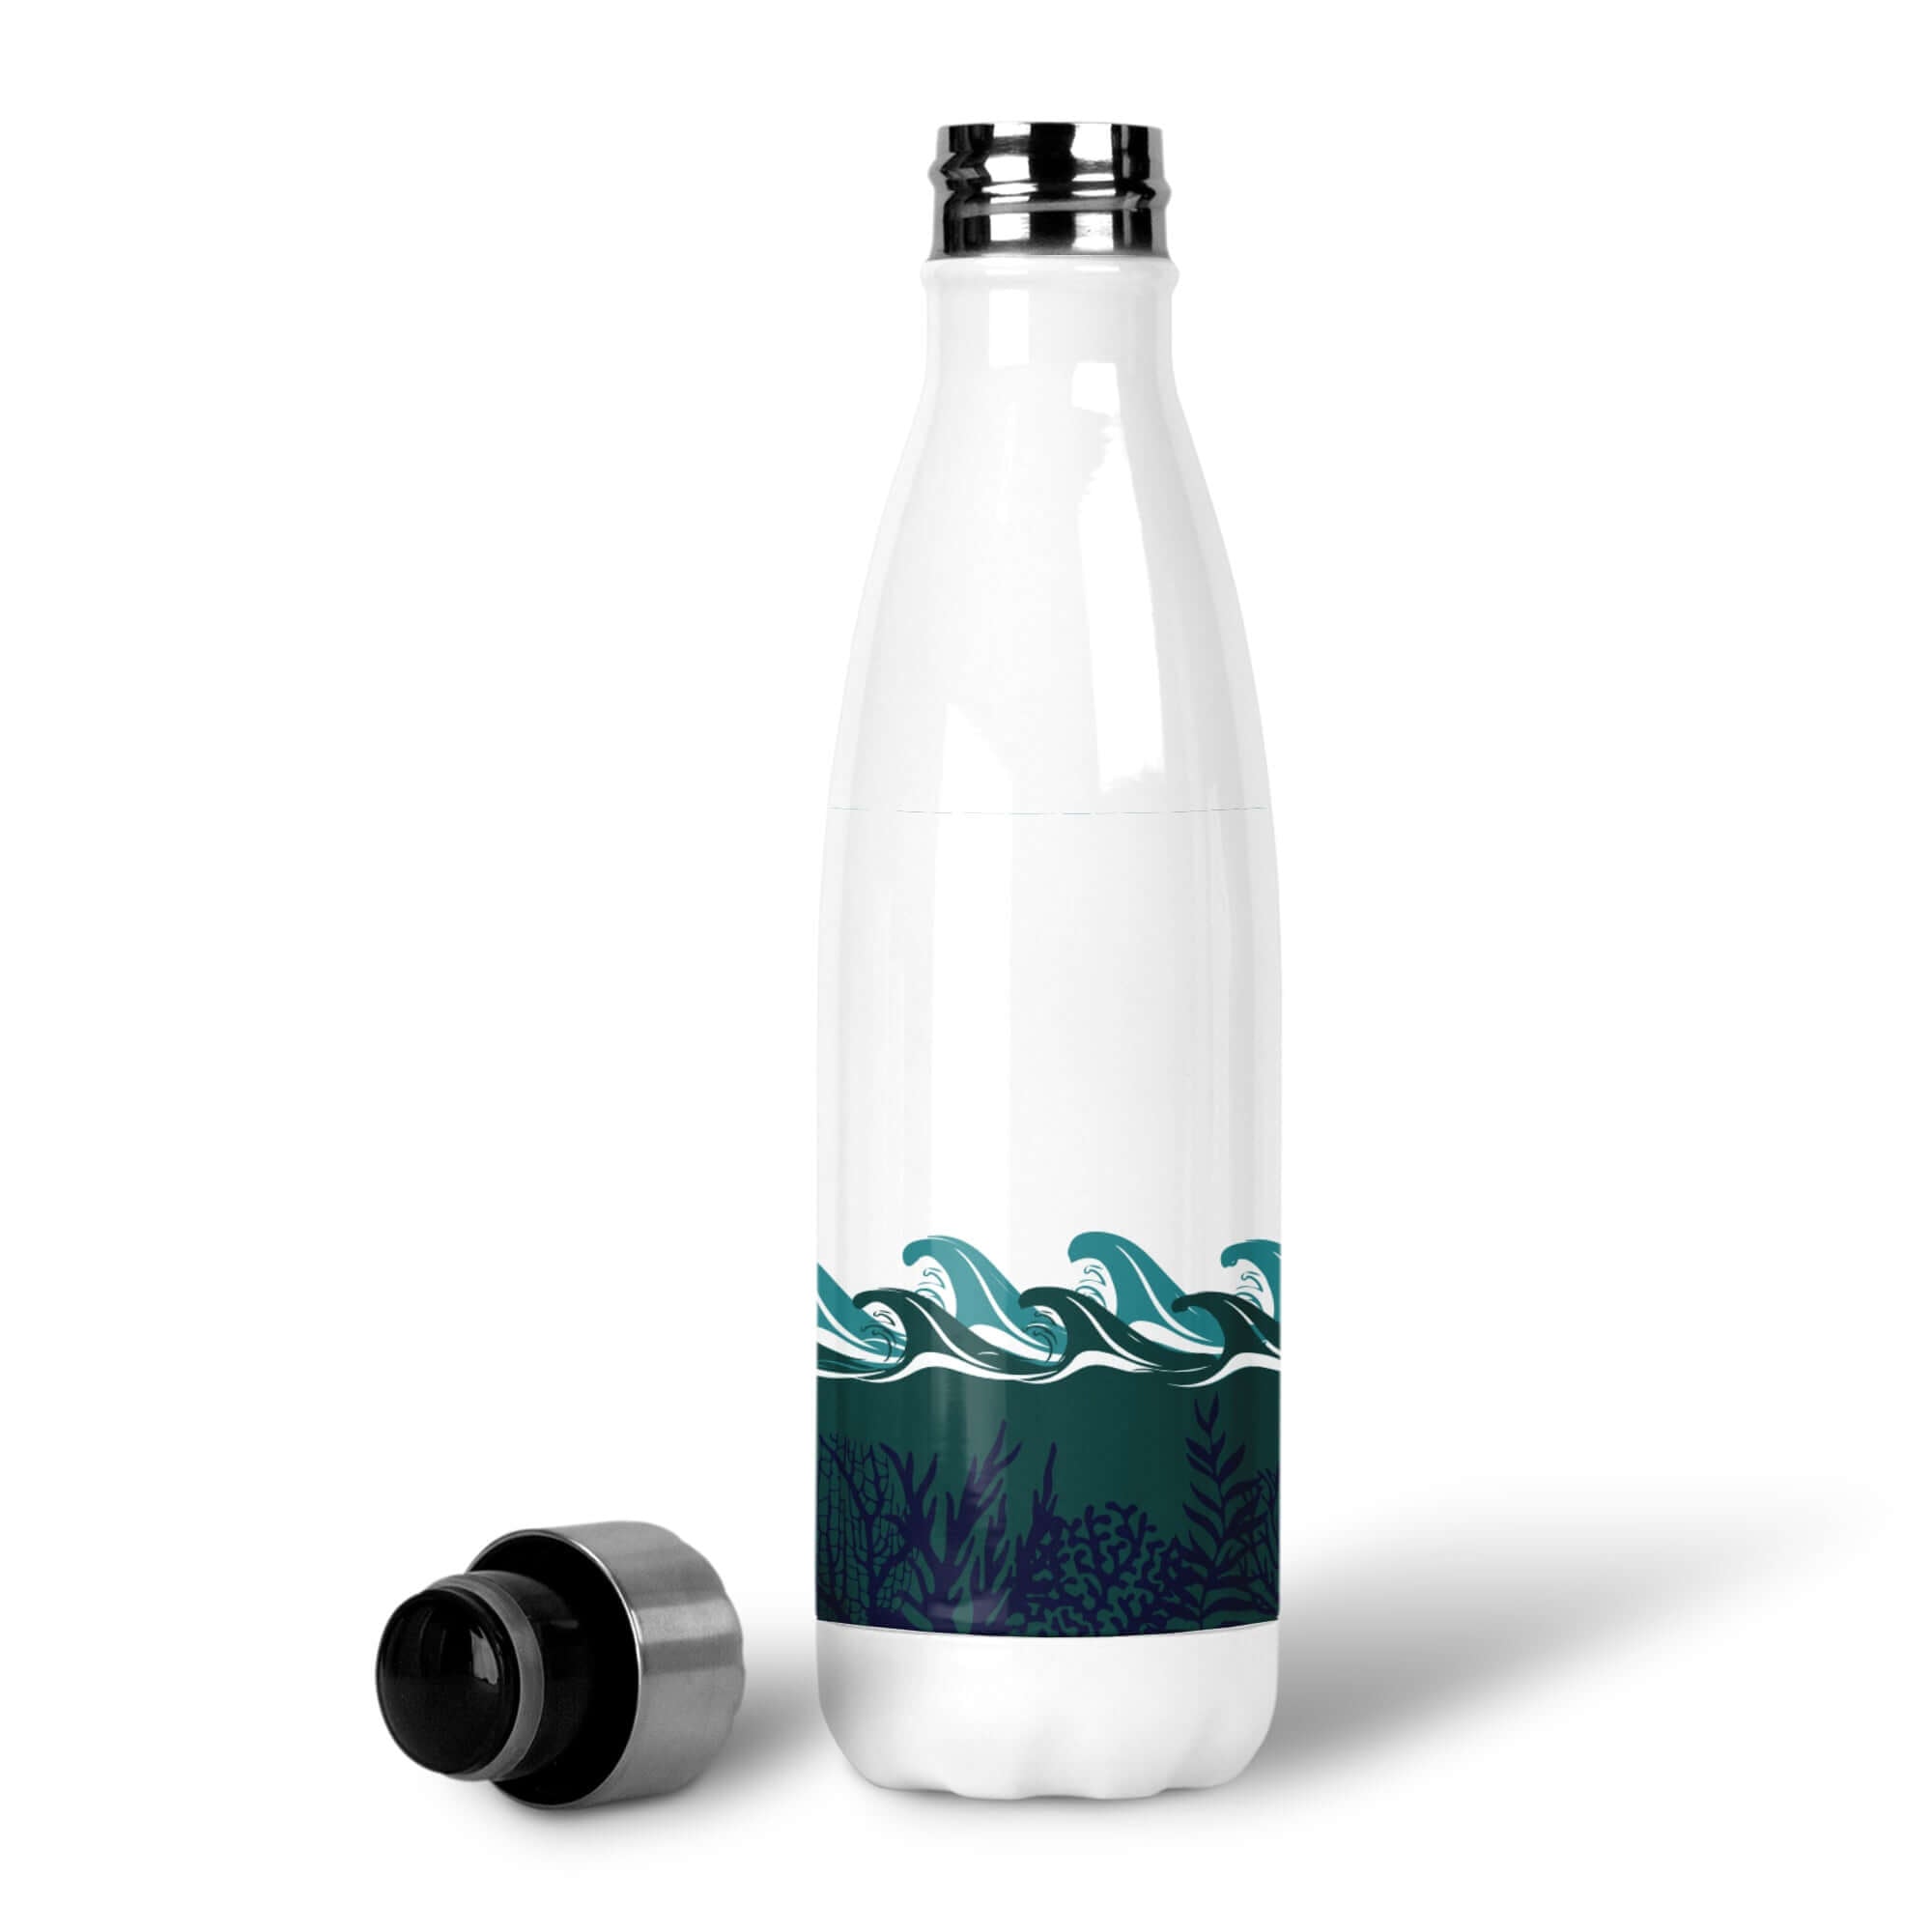 Deep Blue Night Day Reusable Bottle